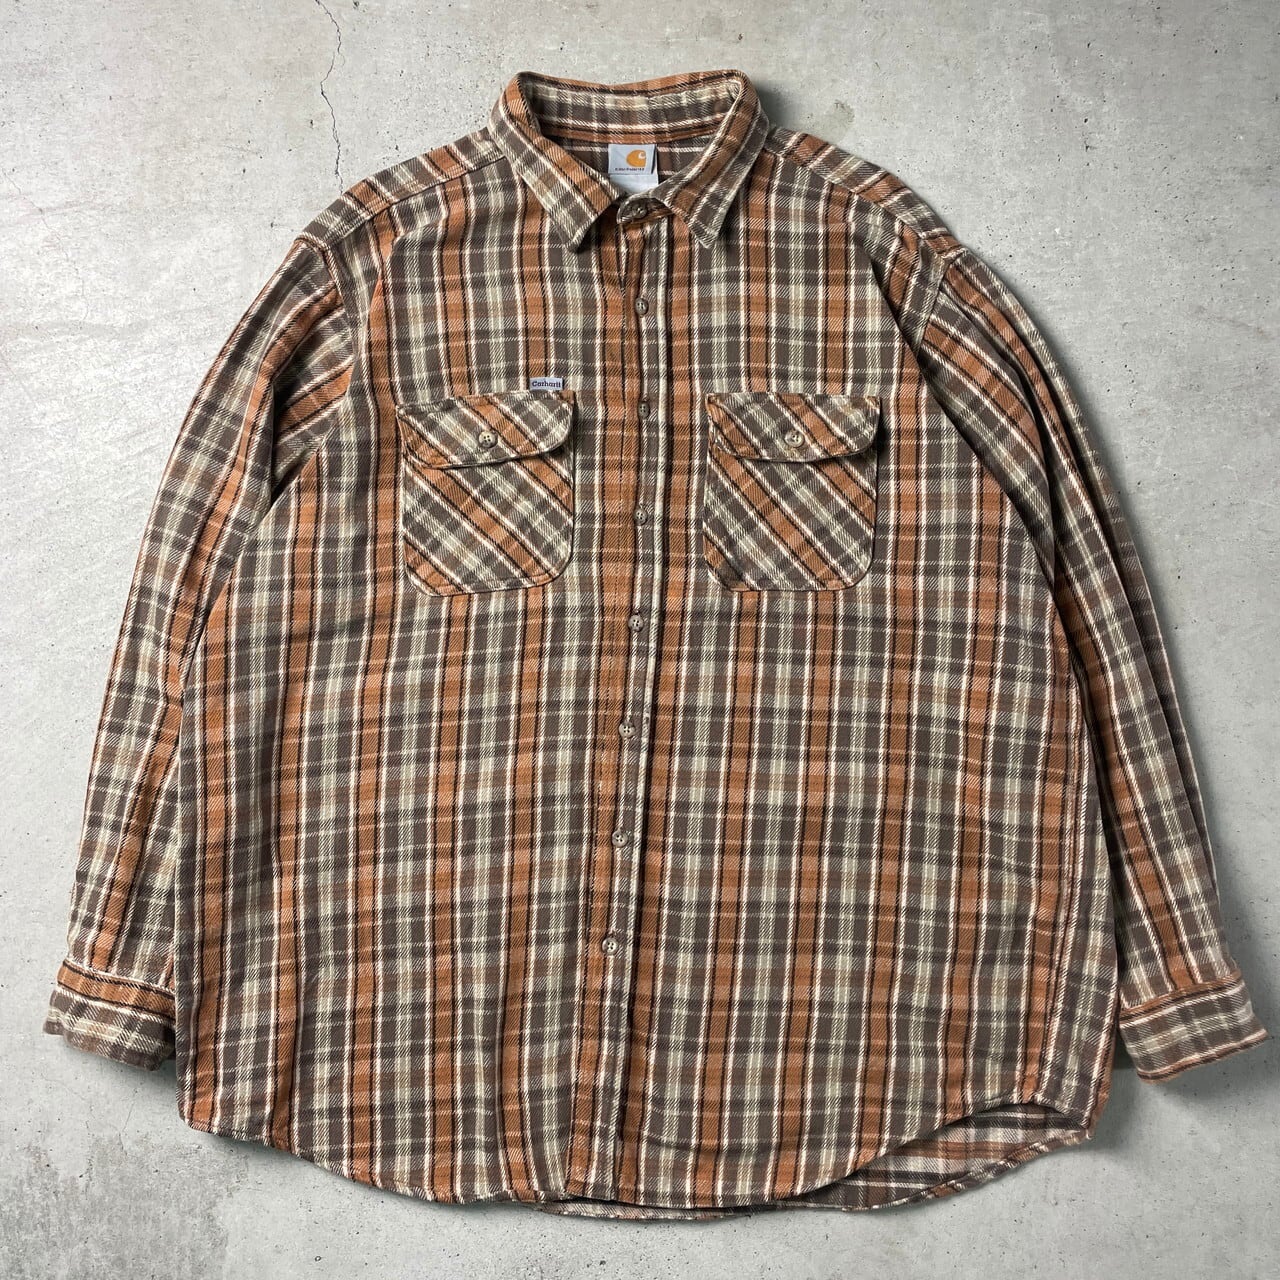 希少 90s カーハート carhartt チェックシャツ 刺繍 オレンジ